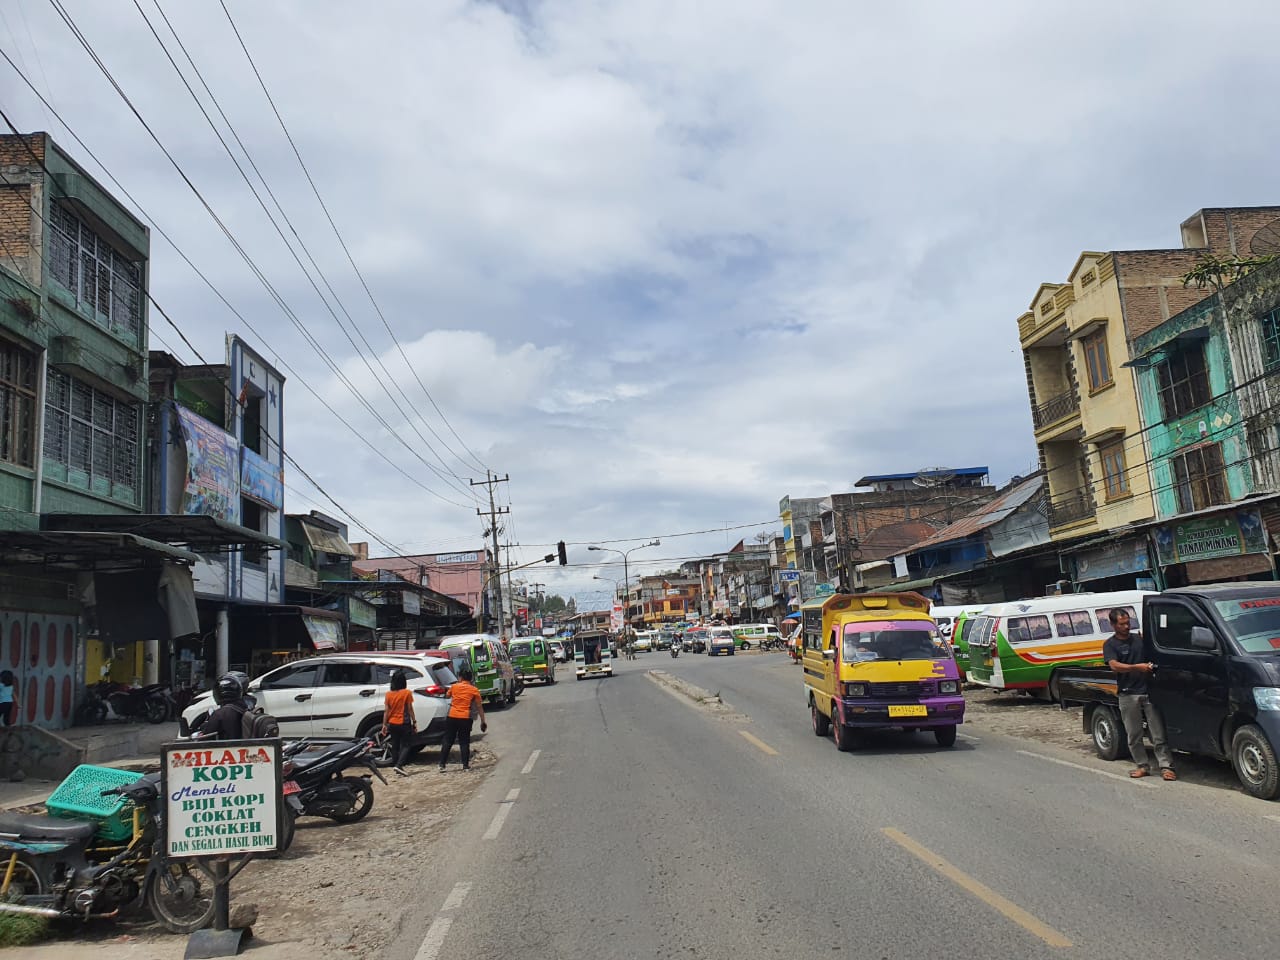 Kondisi Terkini Kota Kabanjahe: Jalan Nasional dan Perkotaan, Drainase hingga Trotoar Rusak